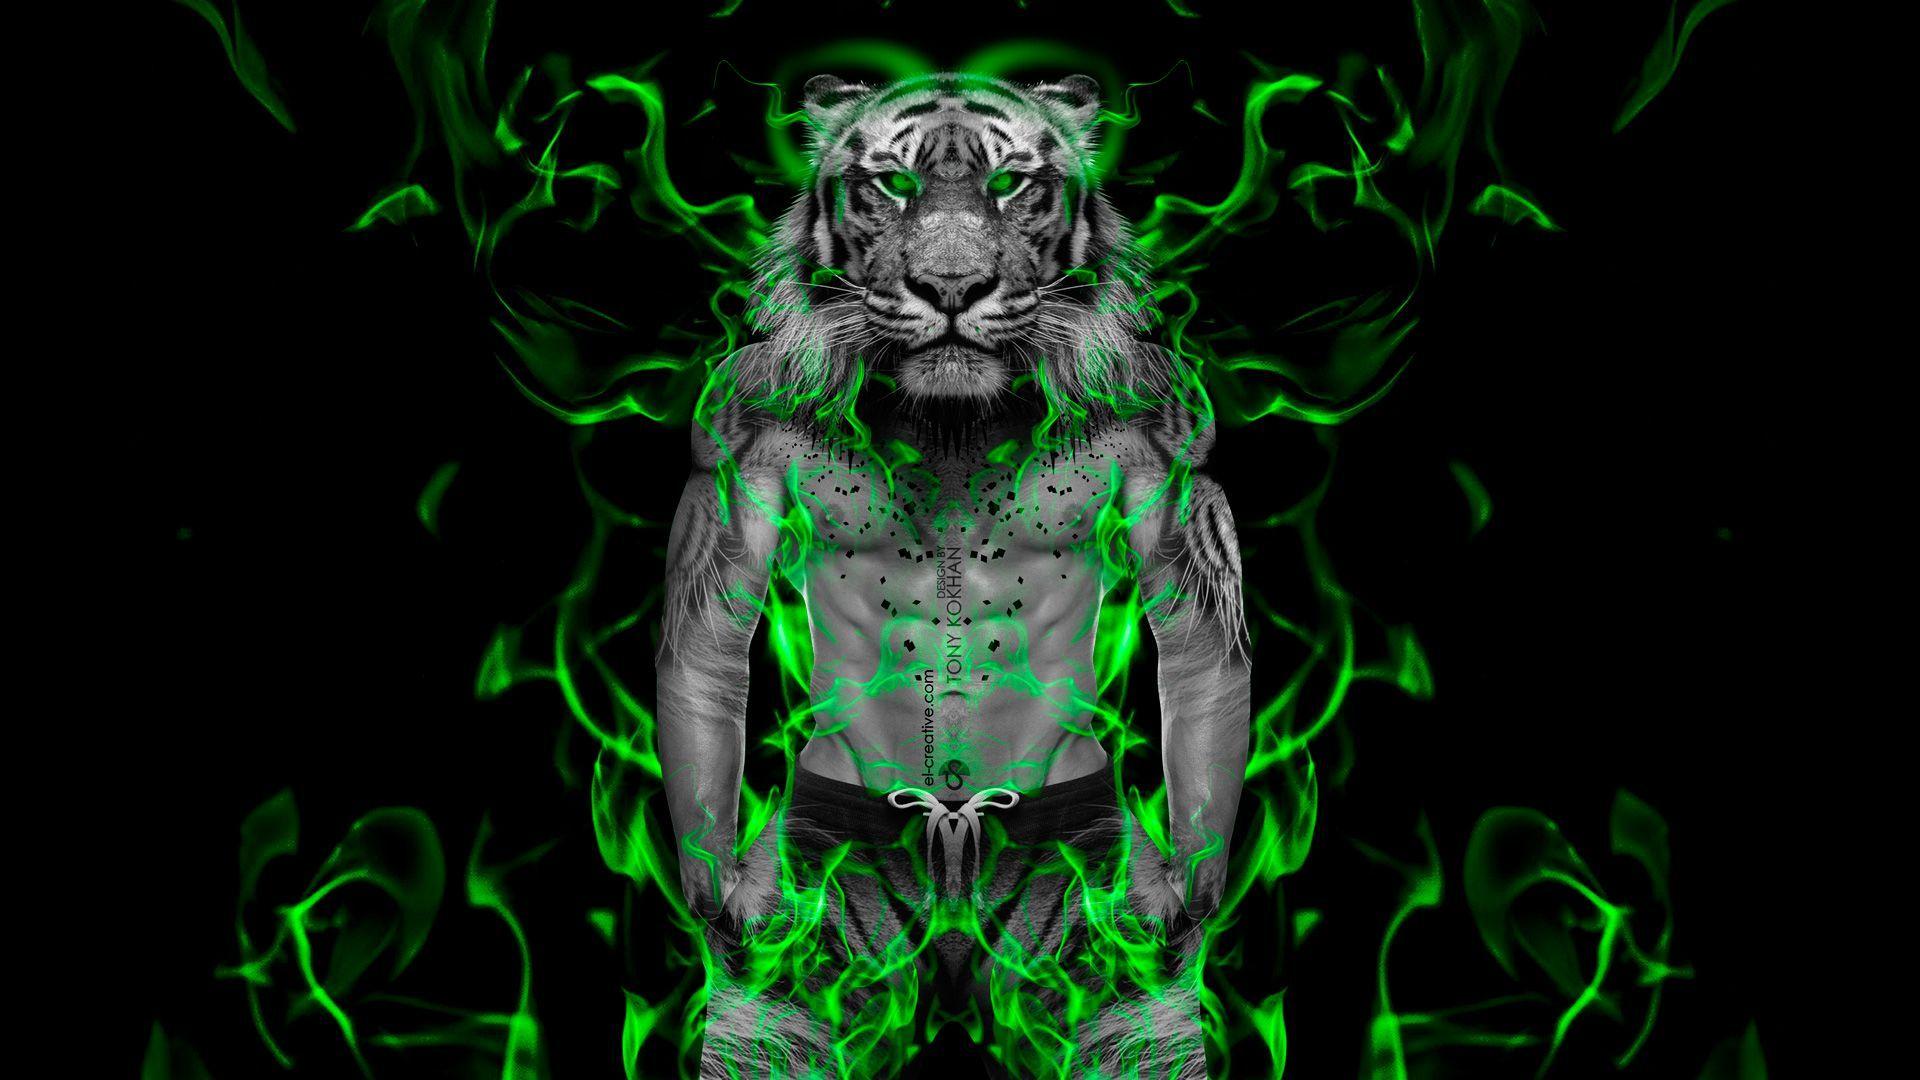 Wallpaper Lights Singer Description Of Green Neon Light Tiger